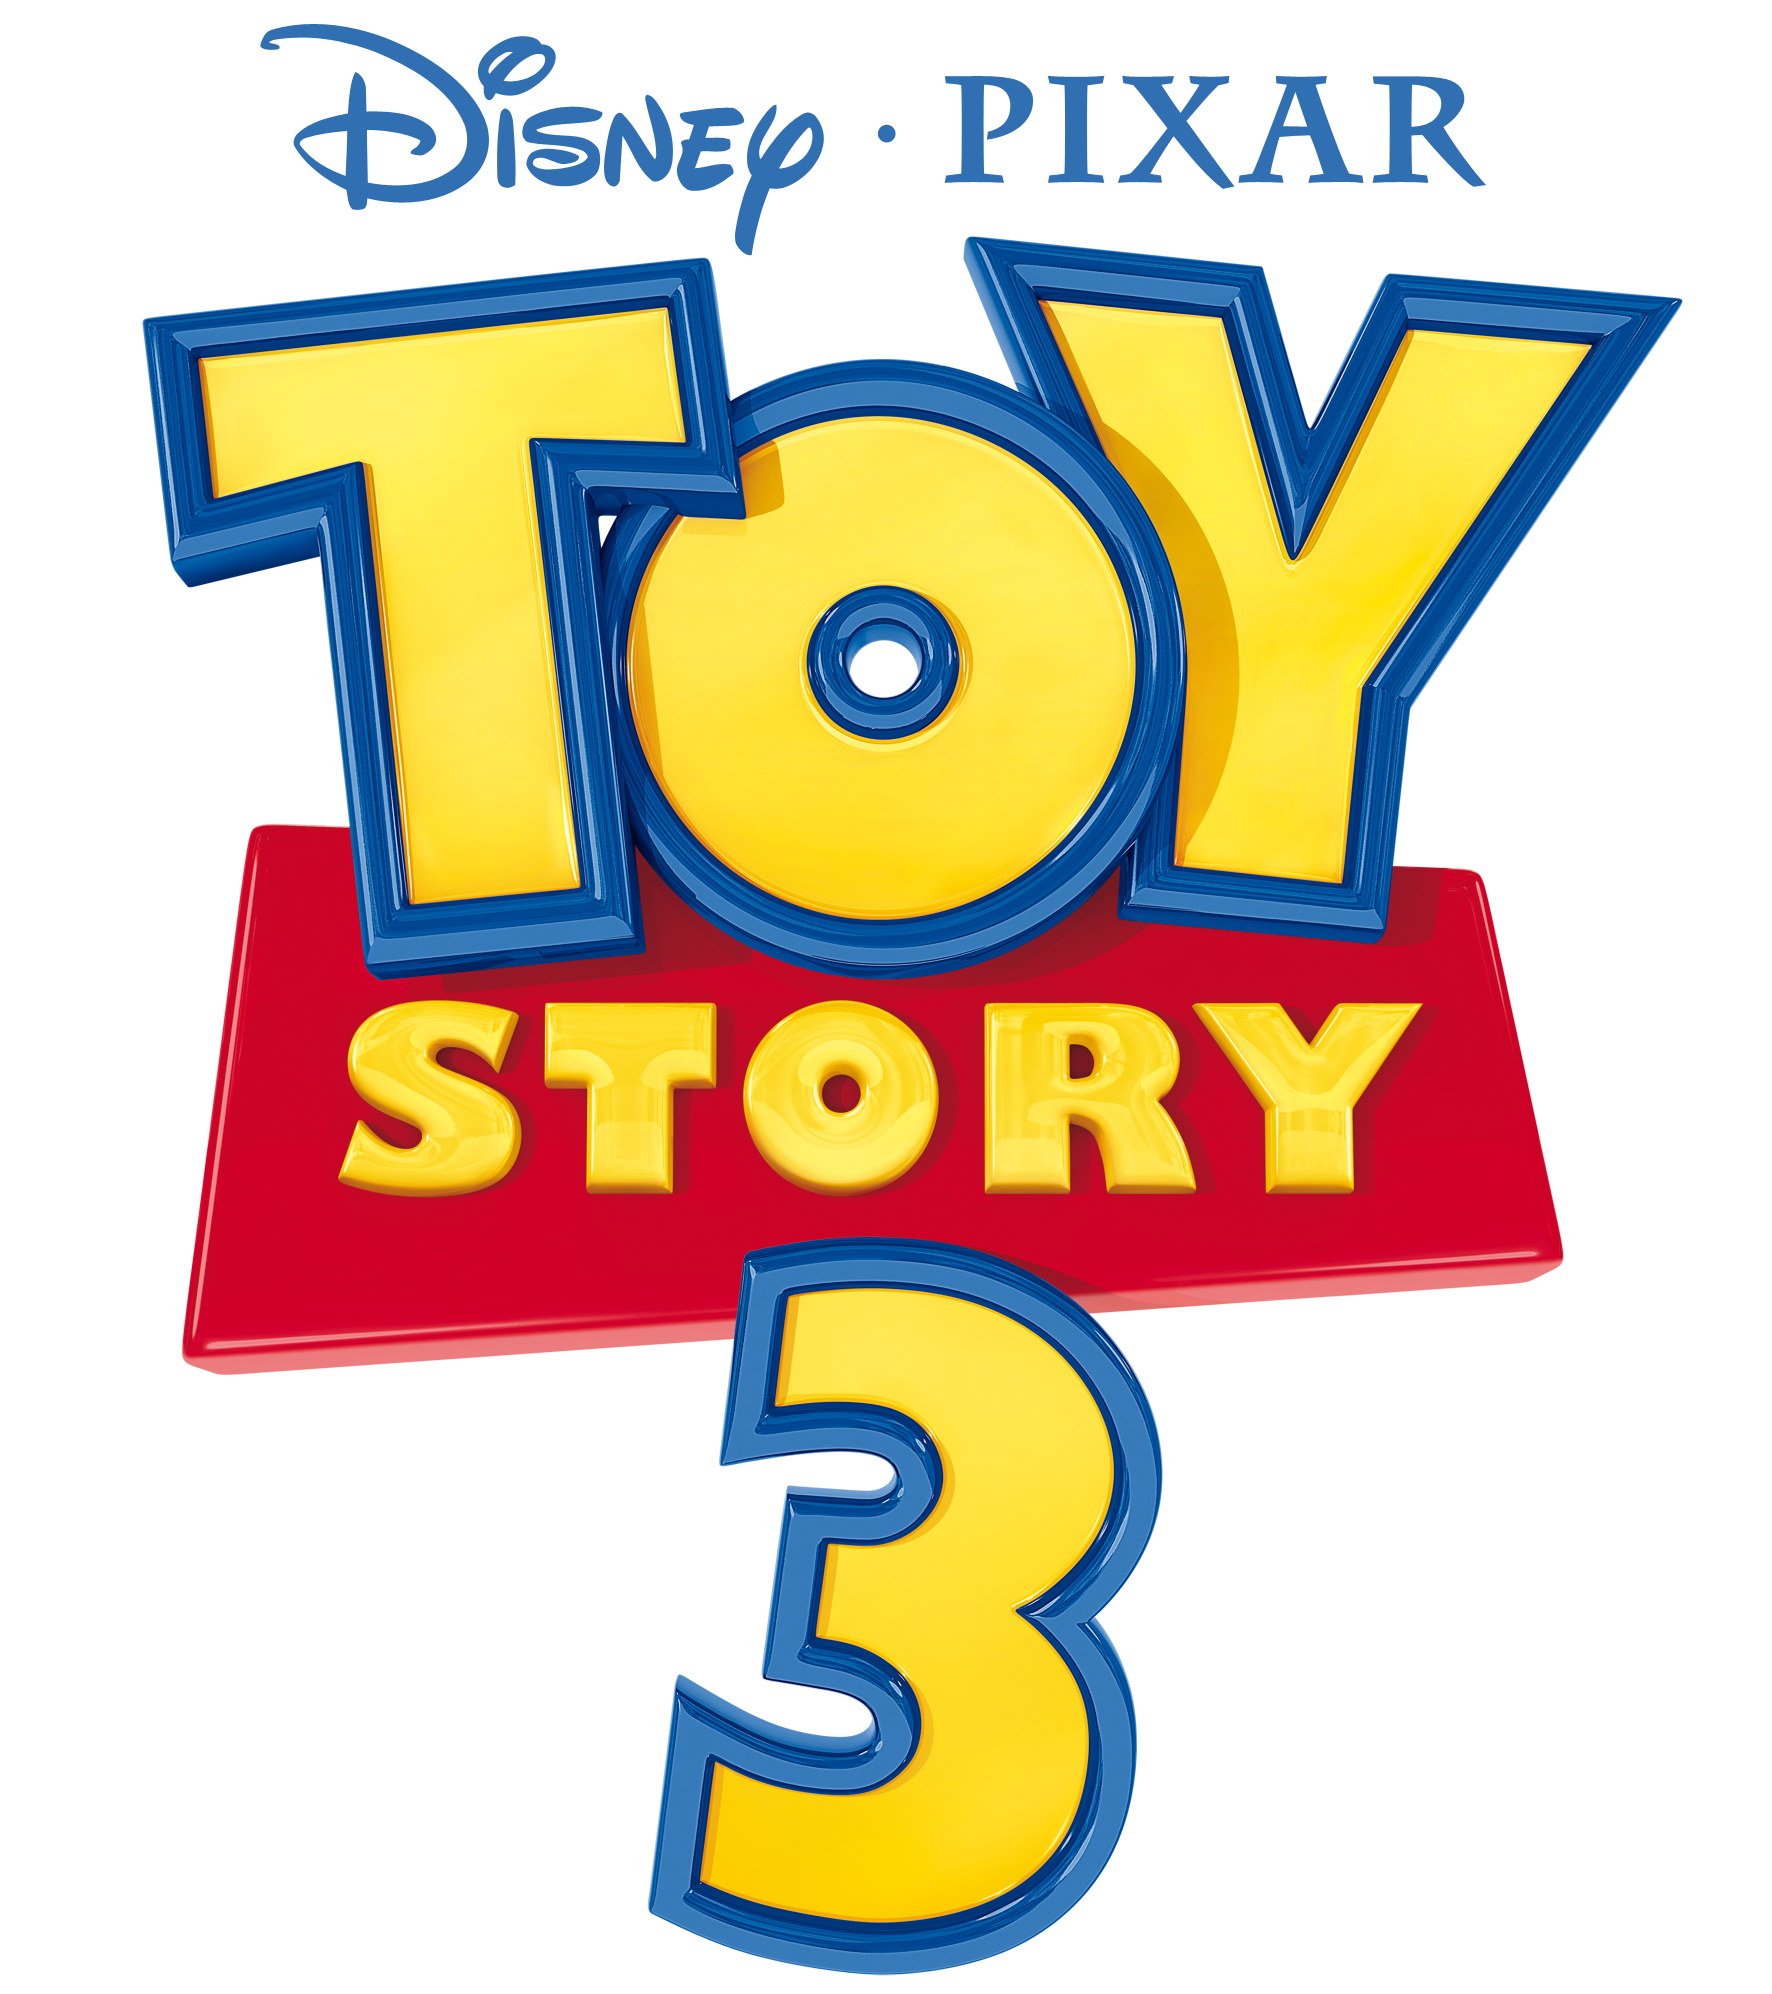 toy story 3 logo